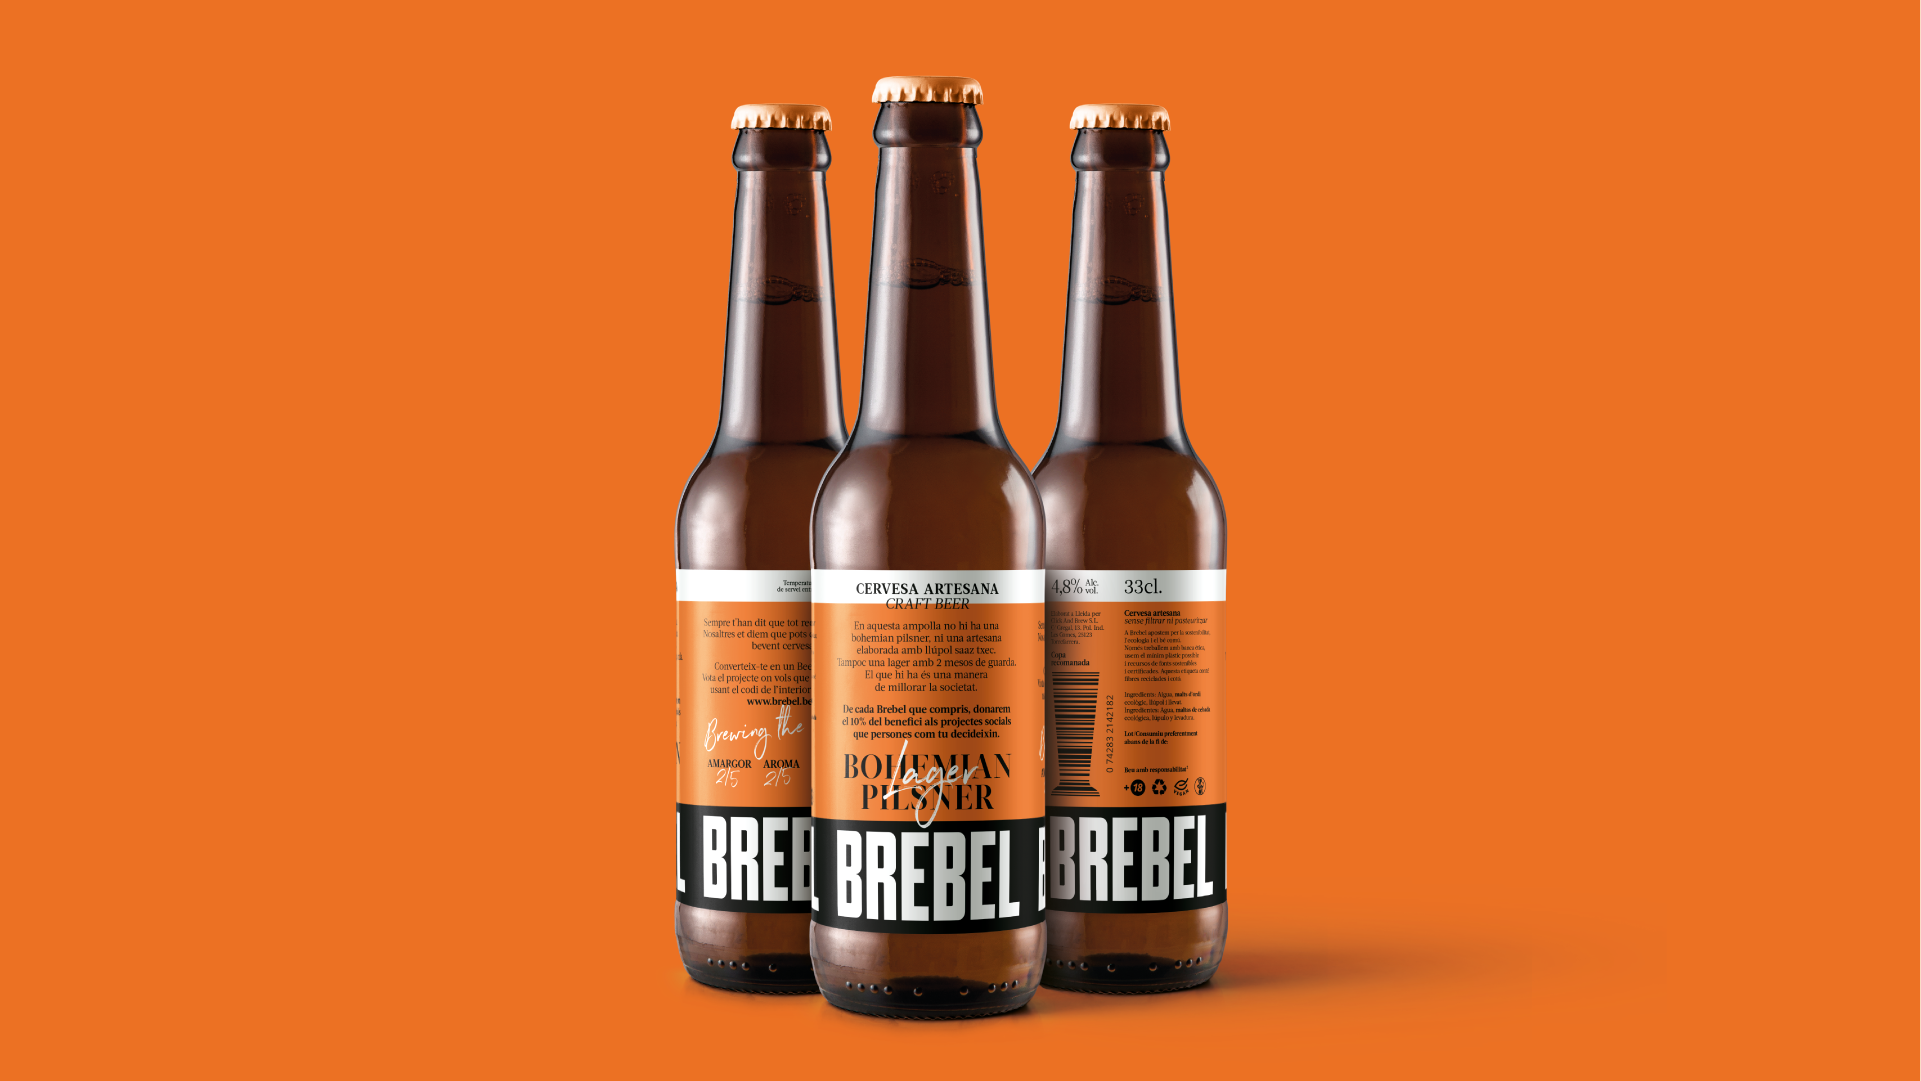 BREBEL - El mundo no necesita otra marca de cerveza más by BOLD - Creative Work